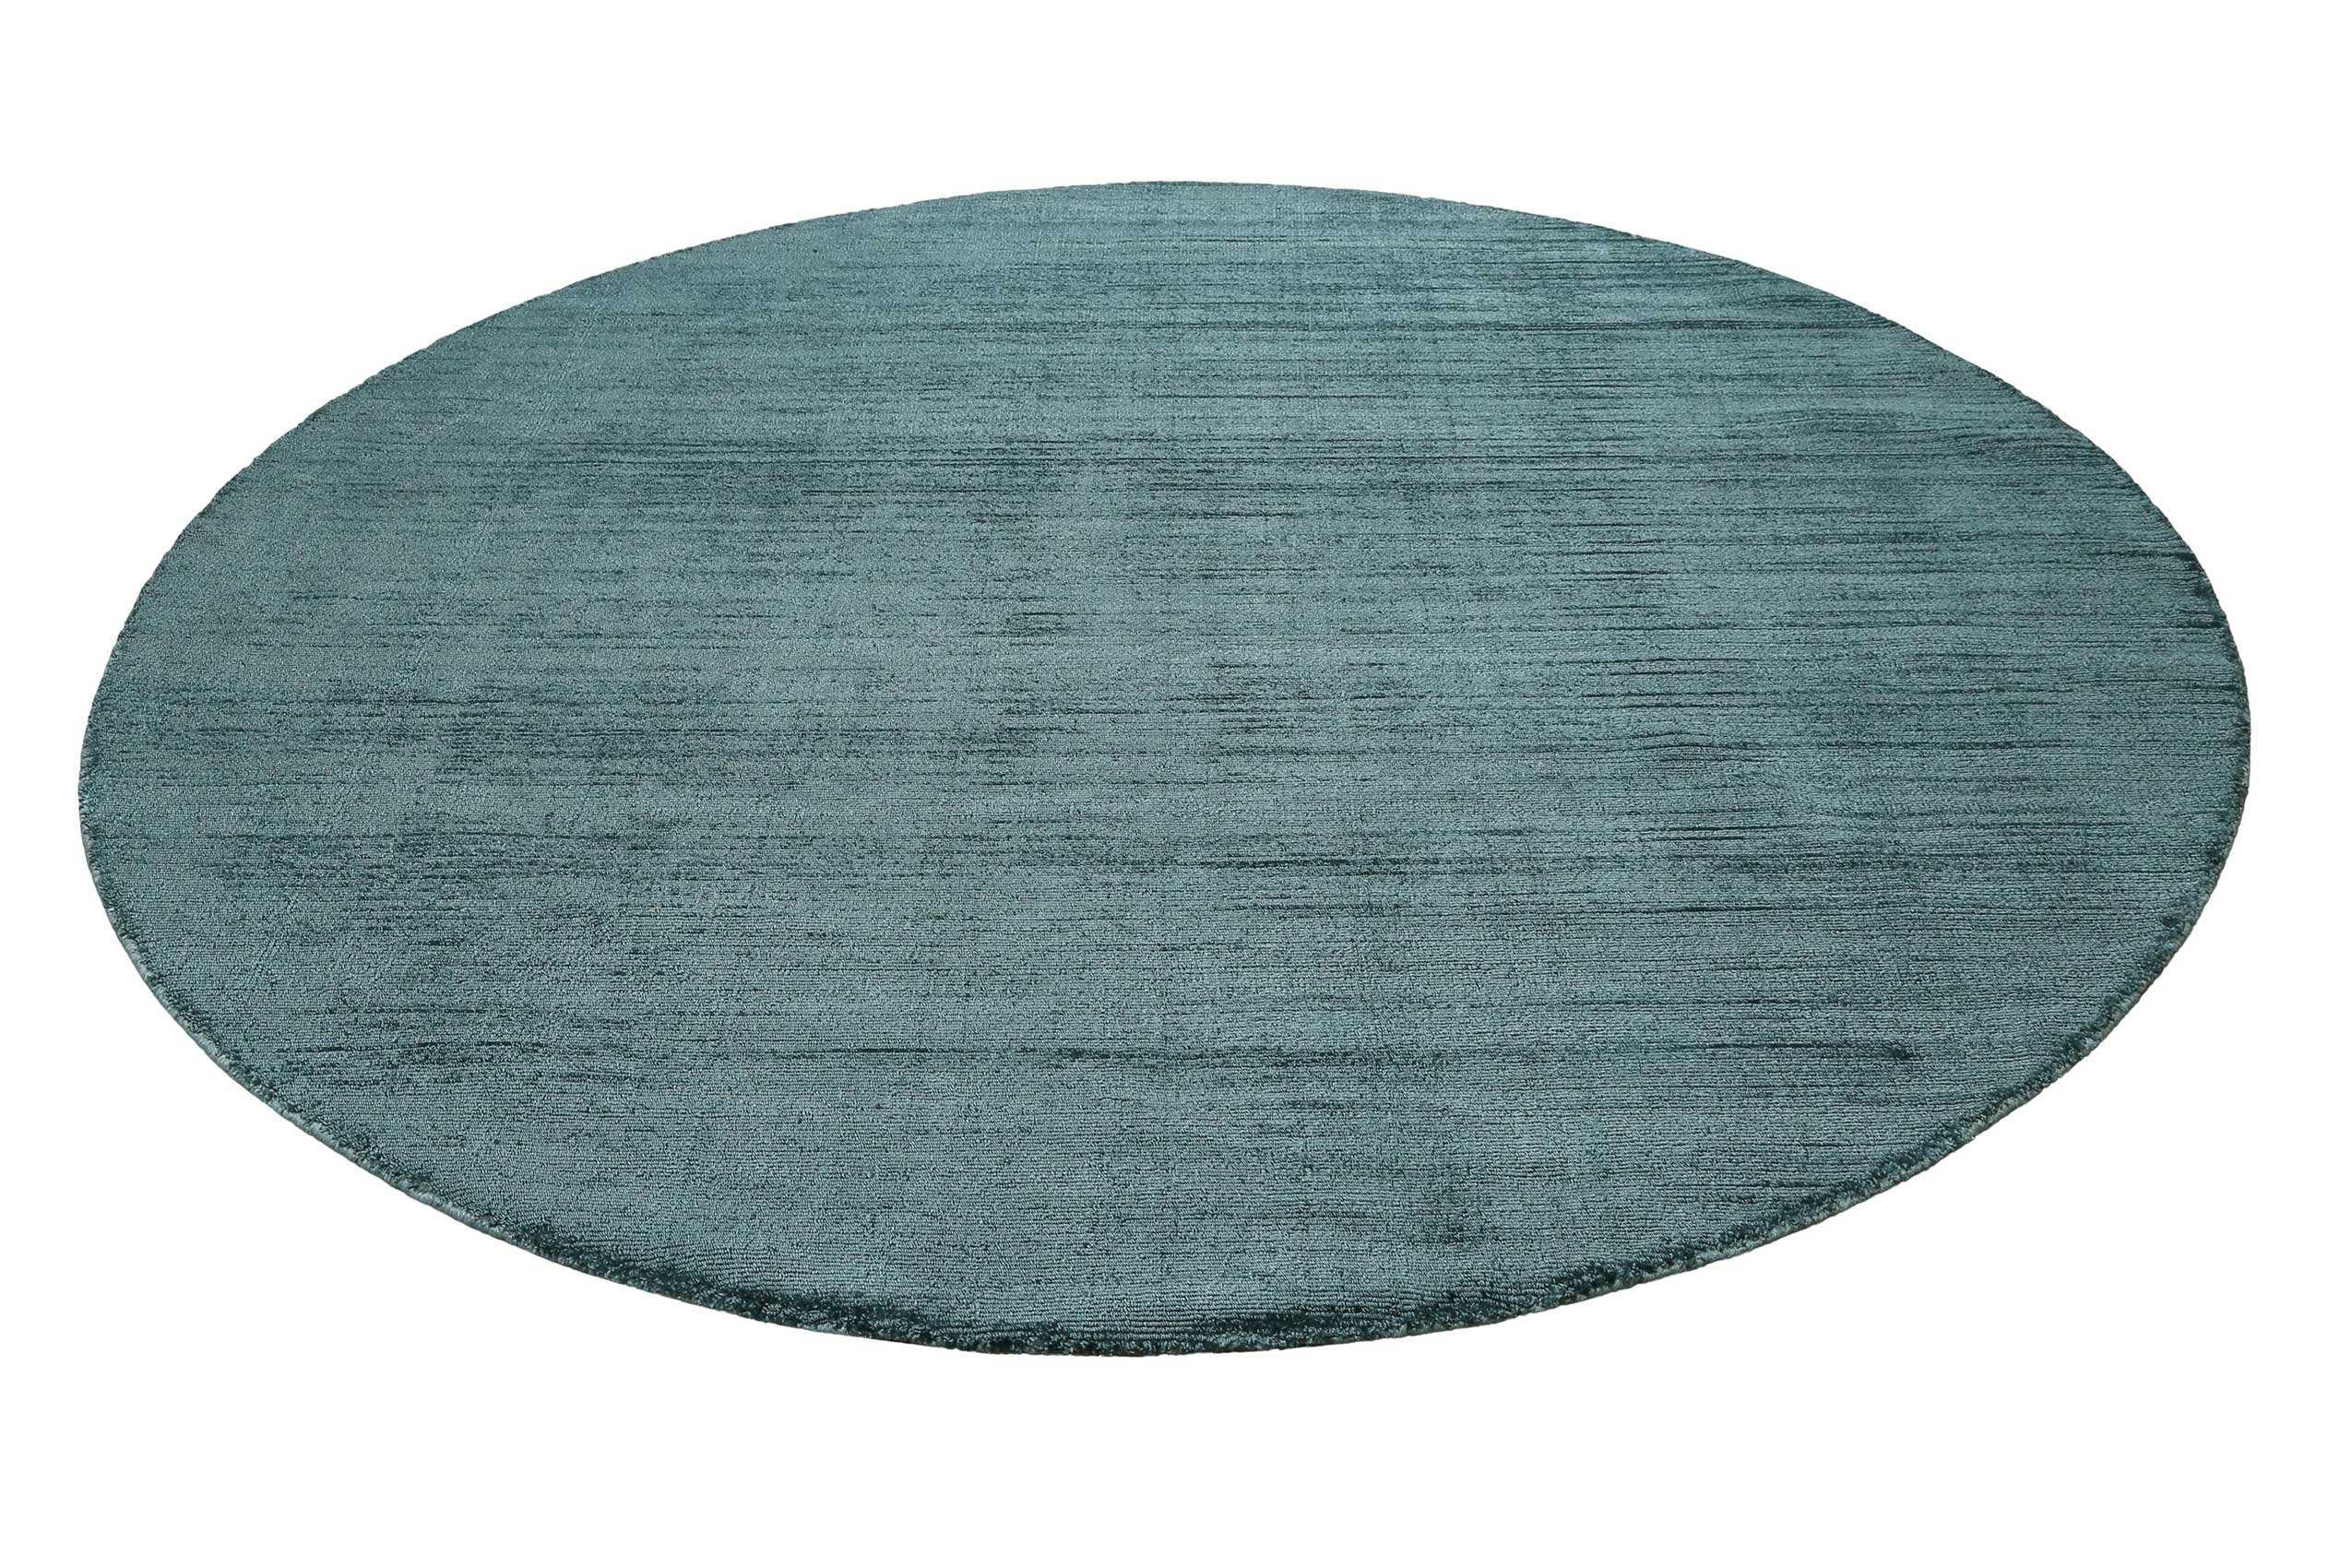 Teppich Gil, Esprit, rund, Höhe: 8 mm, handgewebt, seidig glänzend, schimmernde Farbbrillianz, Melangeeffekt petrol türkis